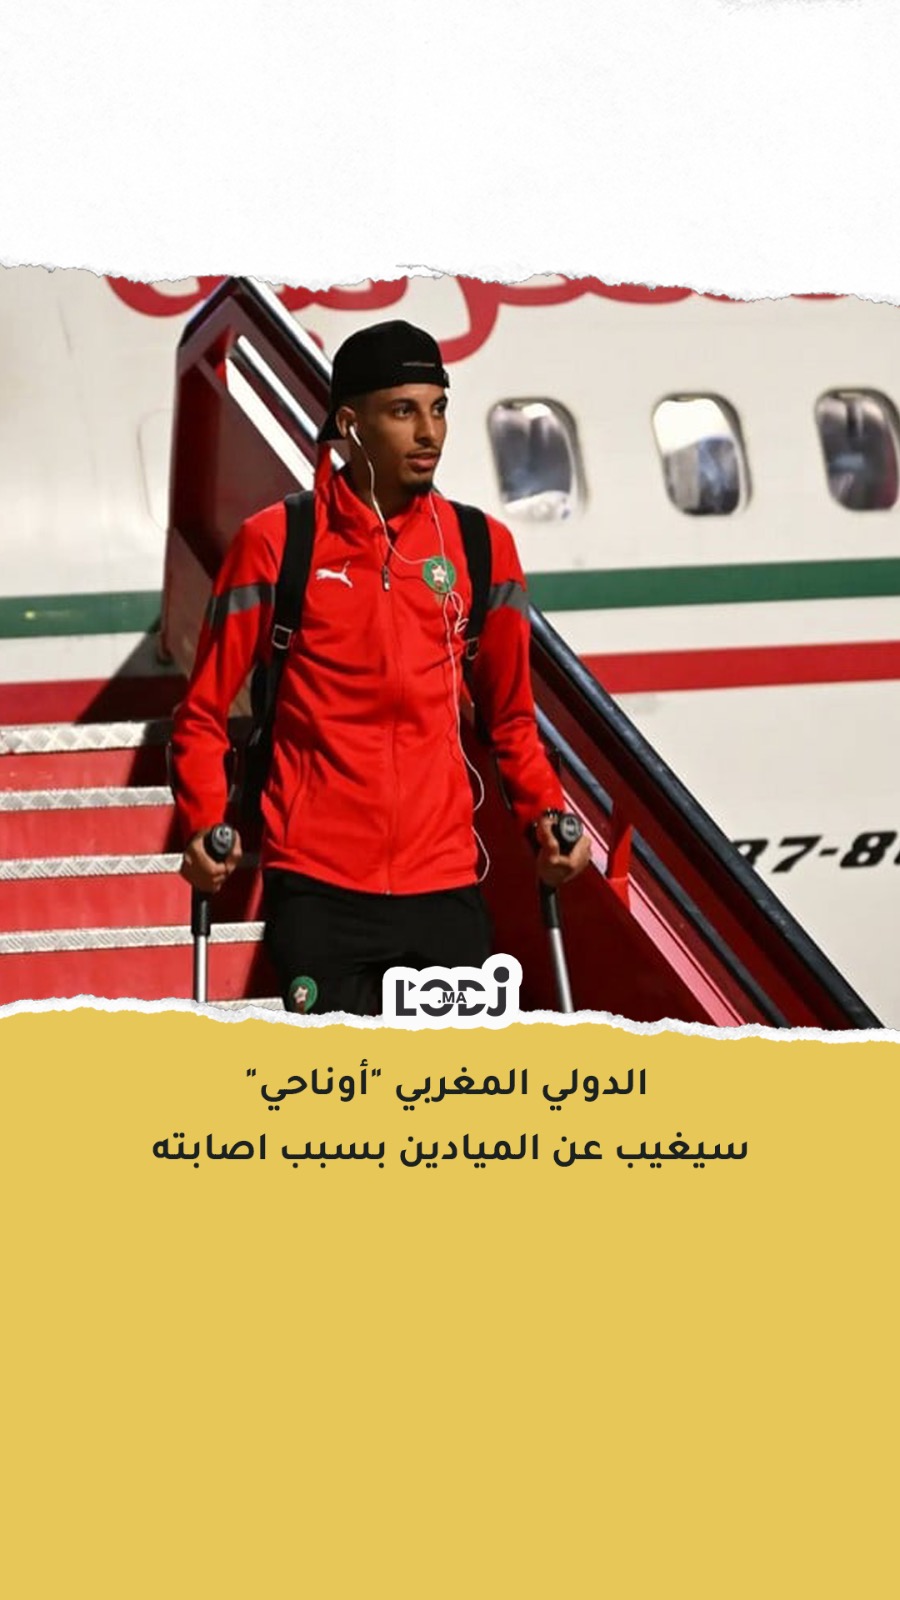 الدولي المغربي "أوناحي" سيغيب عن الميادين بسبب اصابته